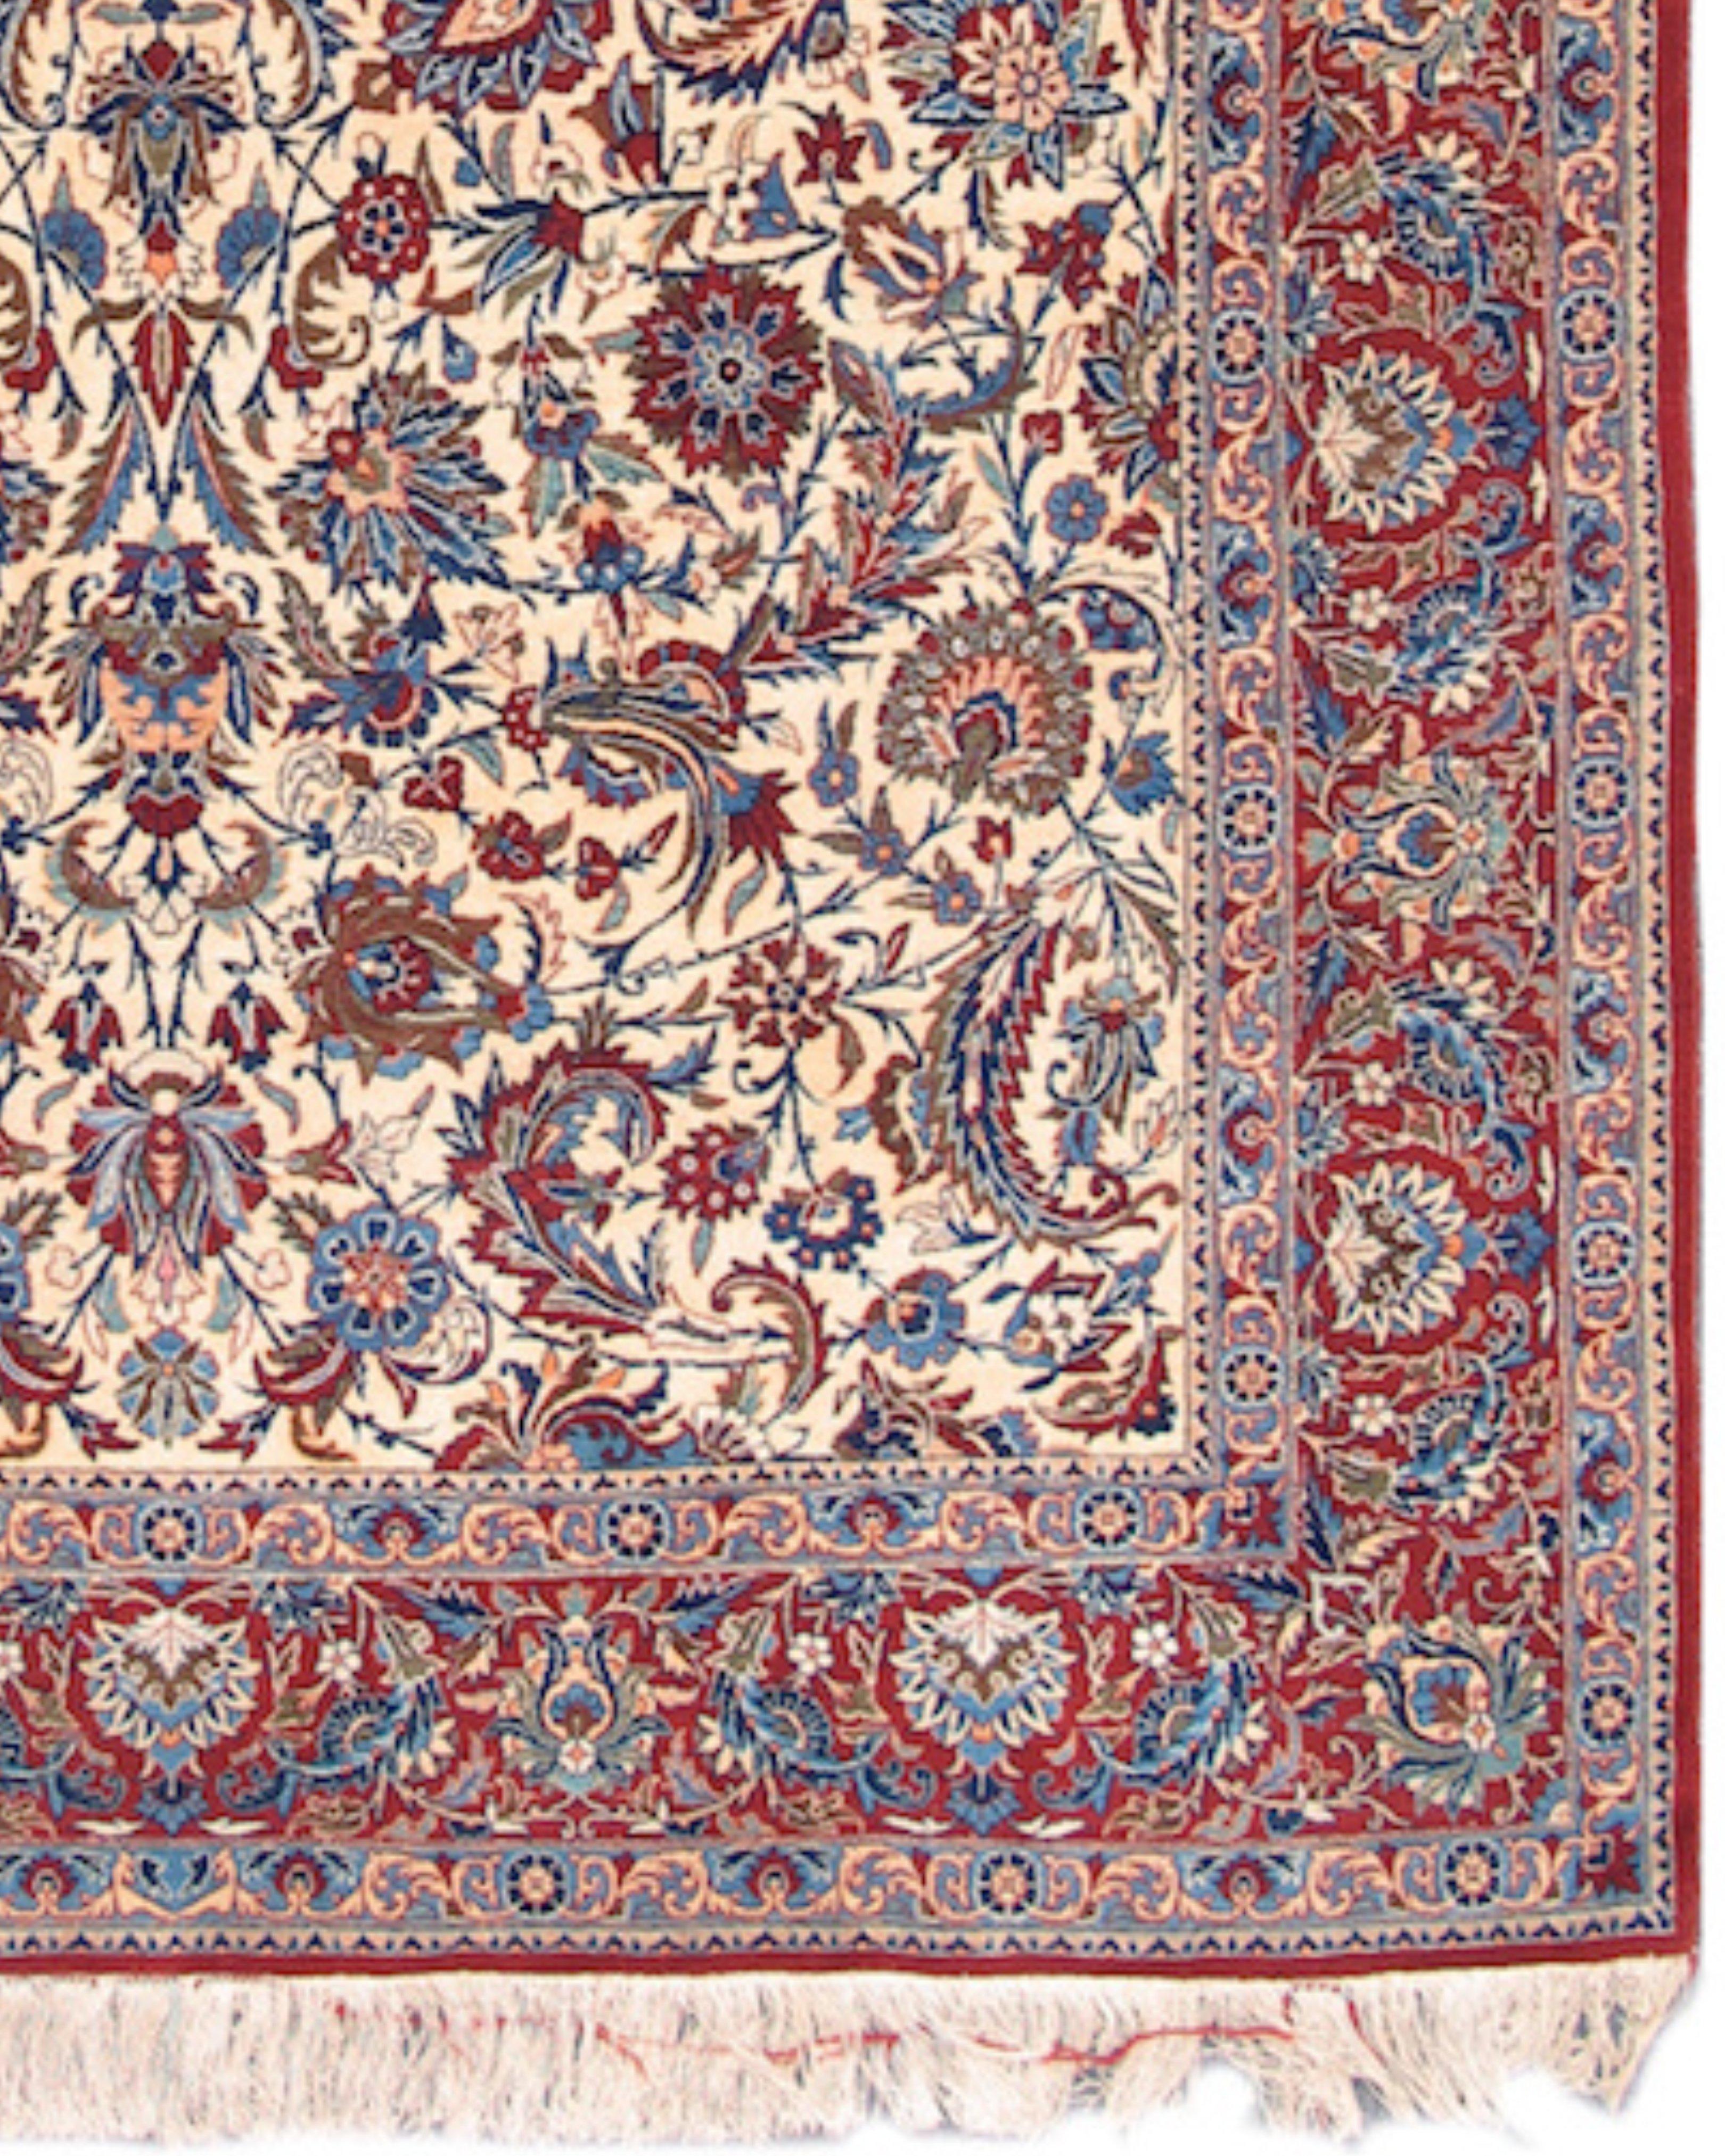 Tapis persan d'Ispahan, milieu du 20e siècle

Base en soie. 600 nœuds par pouce carré.

Informations complémentaires :
Dimensions : 4'10